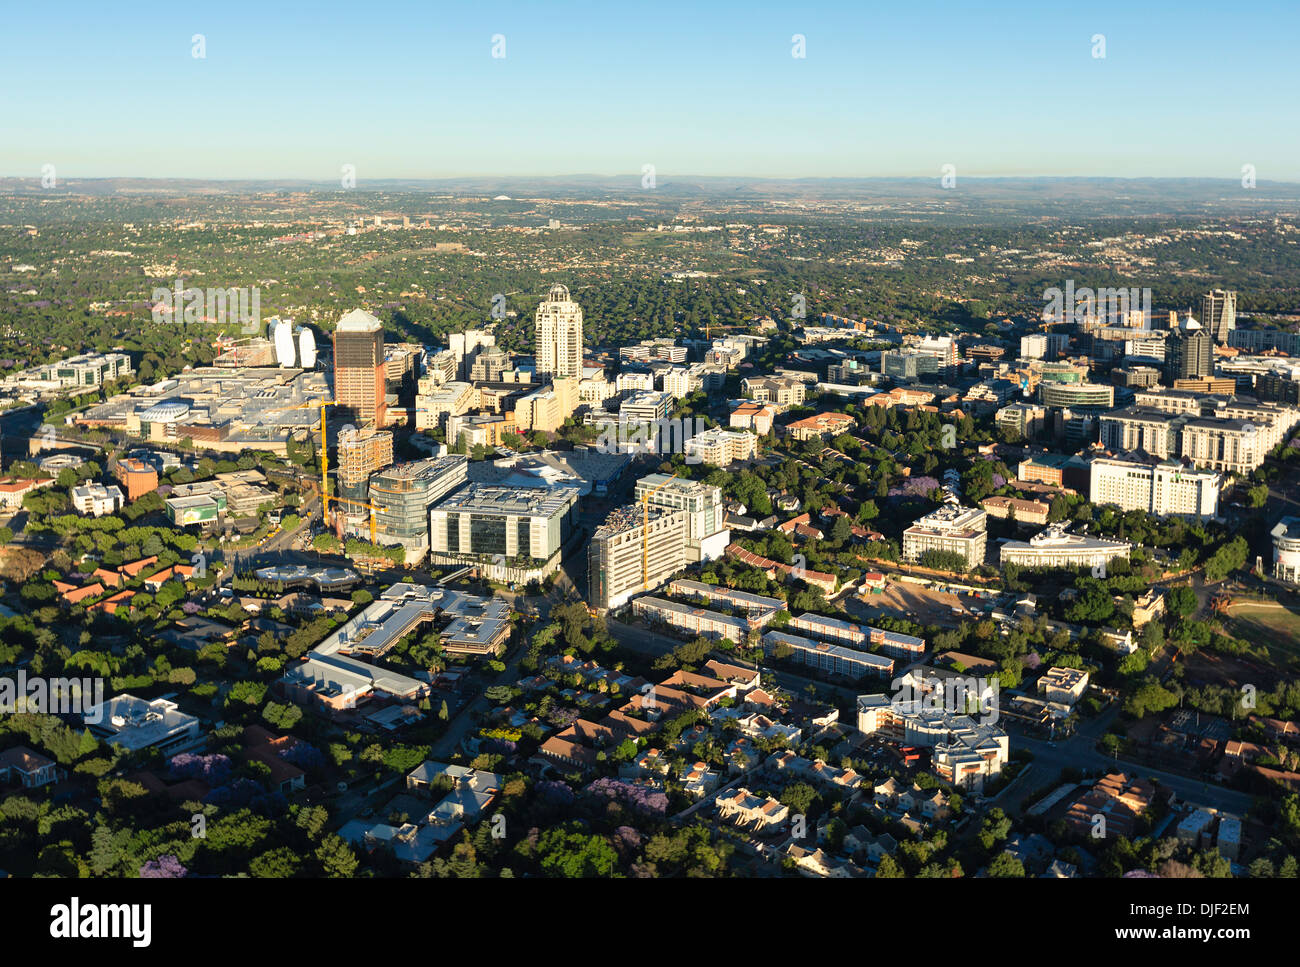 Vue aérienne de Sandton, Johannesburg, Afrique du Sud. Banque D'Images